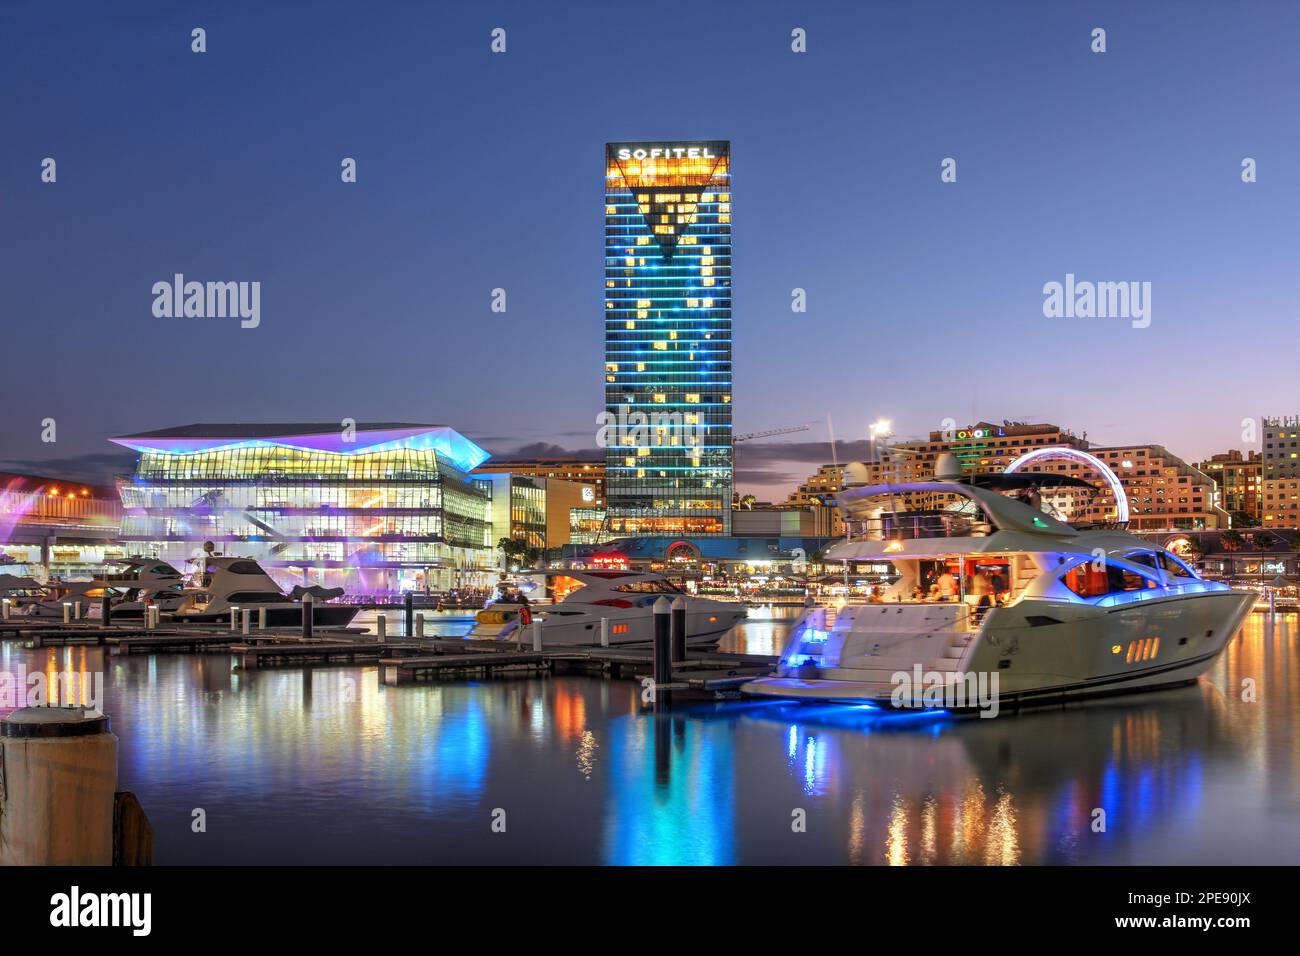 Sonnenuntergang in Darling Harbour, Barangaroo-Viertel von Sydney, Australien, mit dem International Convention Centre und dem Sofitel Hotel, fertiggestellt im Jahr 2016. Stockfoto